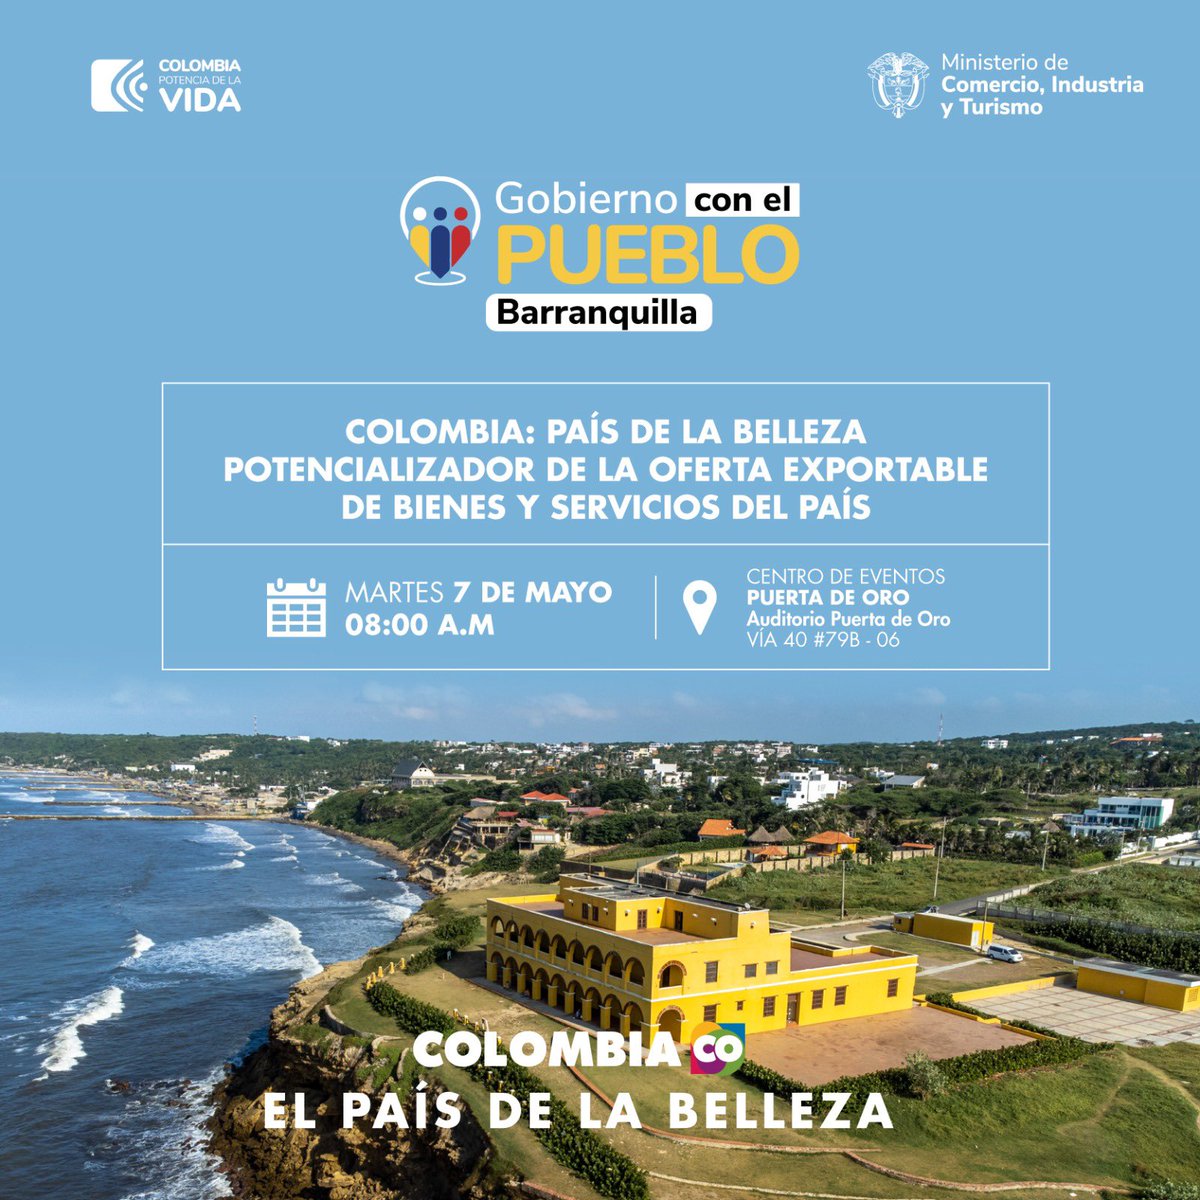 #GobiernoConElPueblo | Junto a @MinComercioCo, organizamos un encuentro en Barranquilla para impulsar el crecimiento empresarial, la atracción de turismo e inversión internacional a #ElPaísDeLaBelleza 🇨🇴. Inscríbase aquí: docs.google.com/forms/d/1WCppQ… #GobiernoConLosBarrios